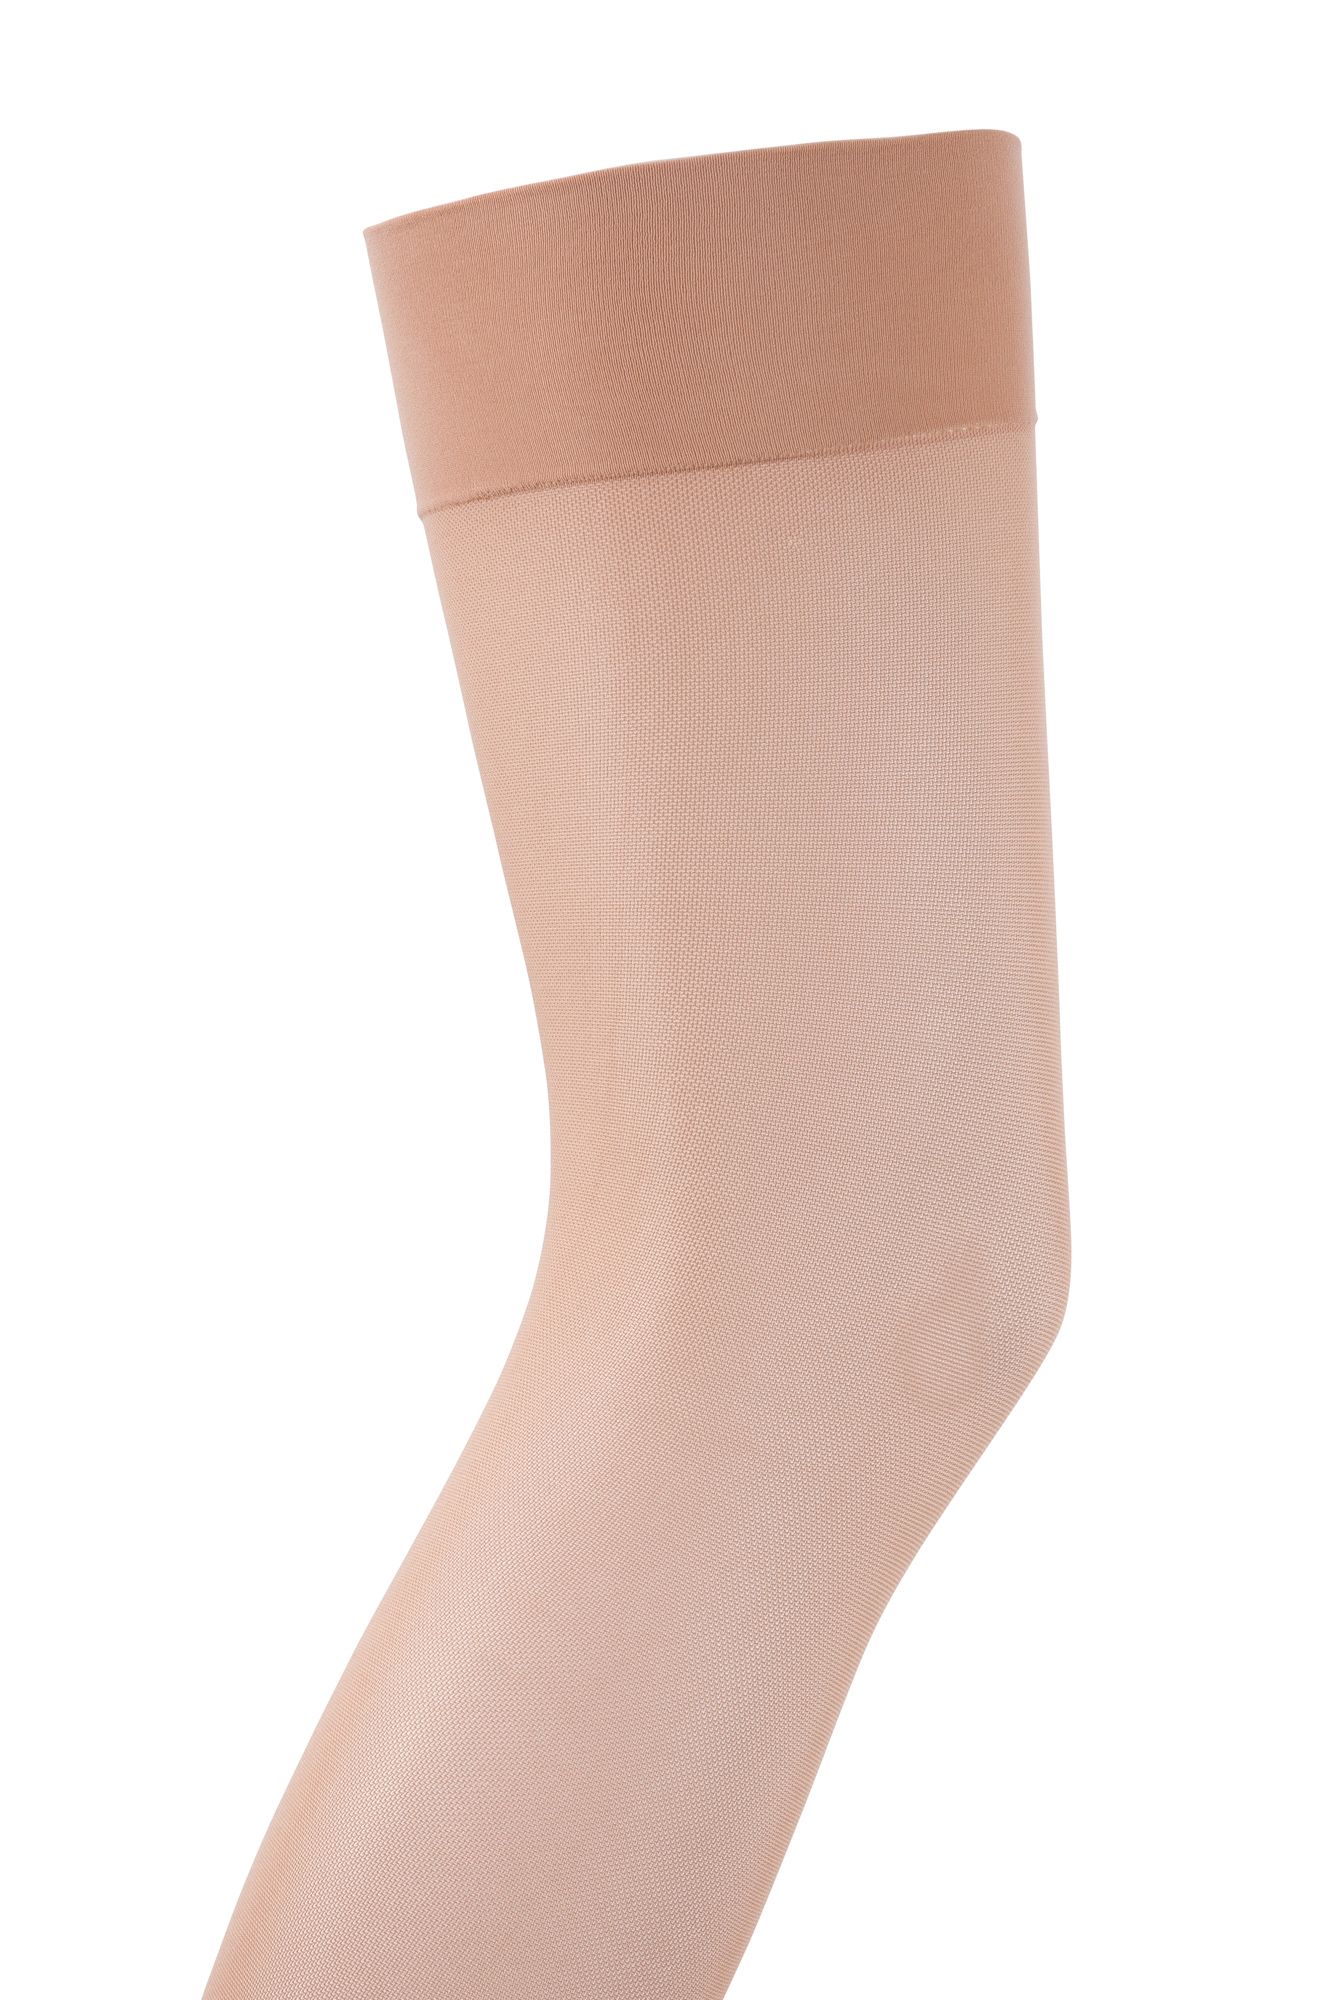 Activa compression socks for women uk